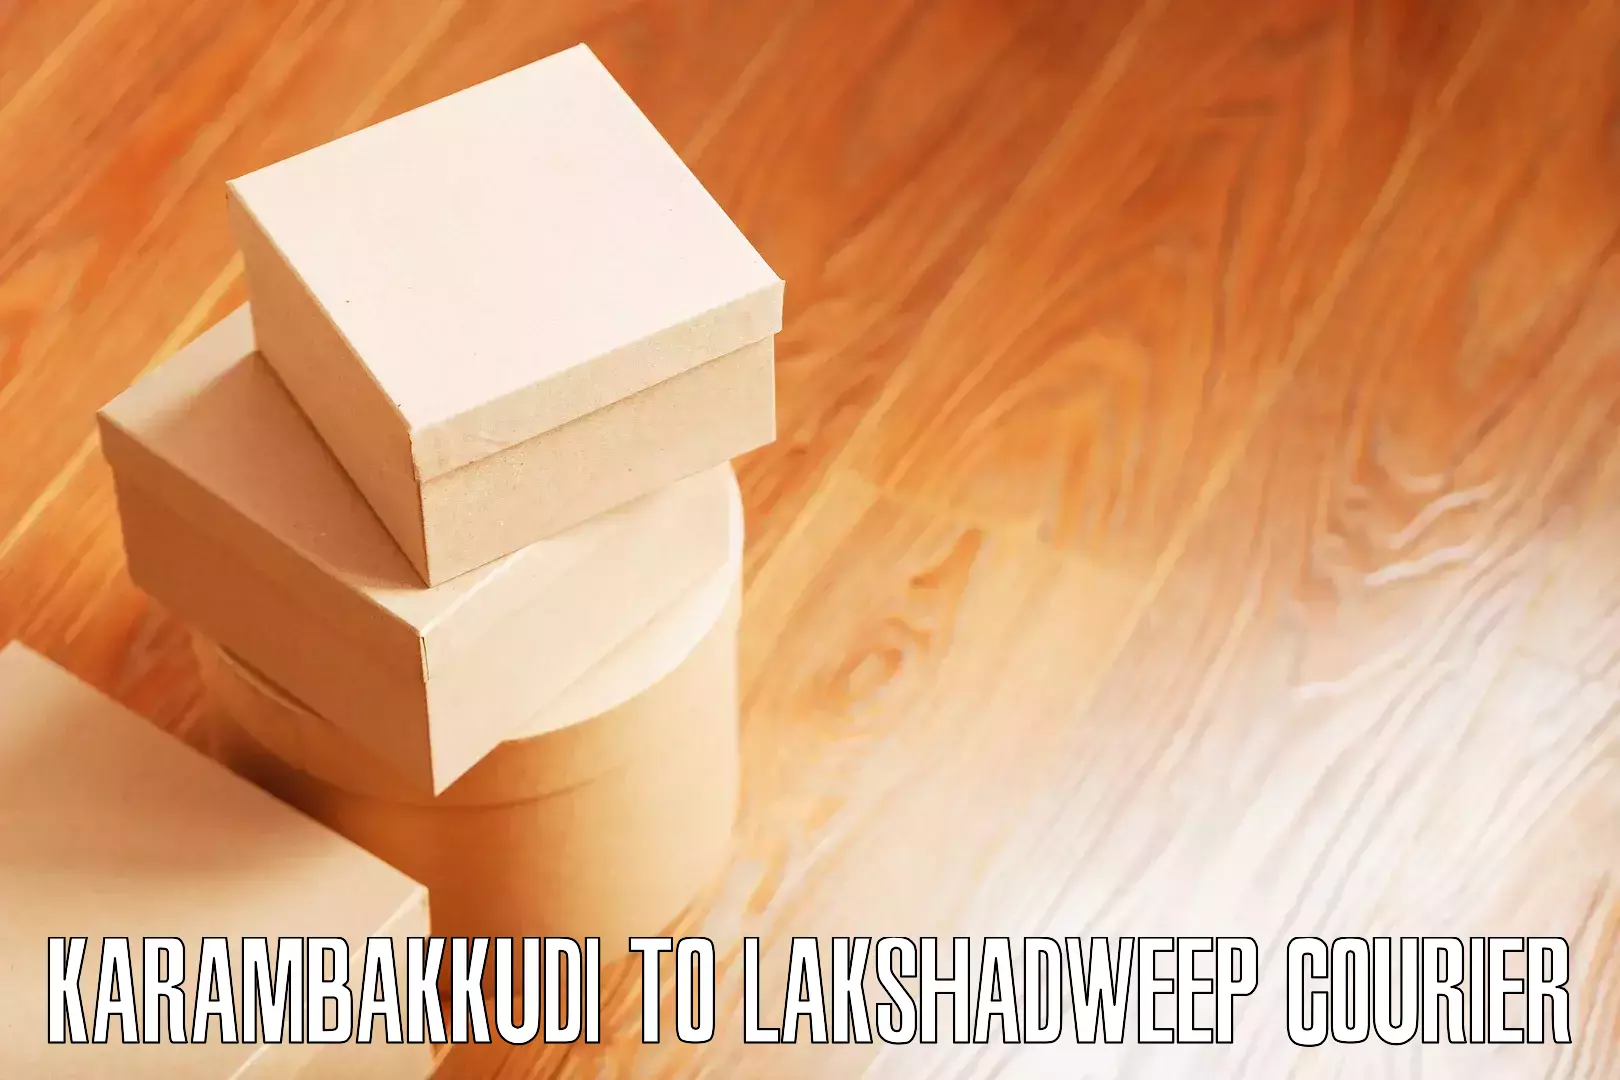 Custom moving plans Karambakkudi to Lakshadweep